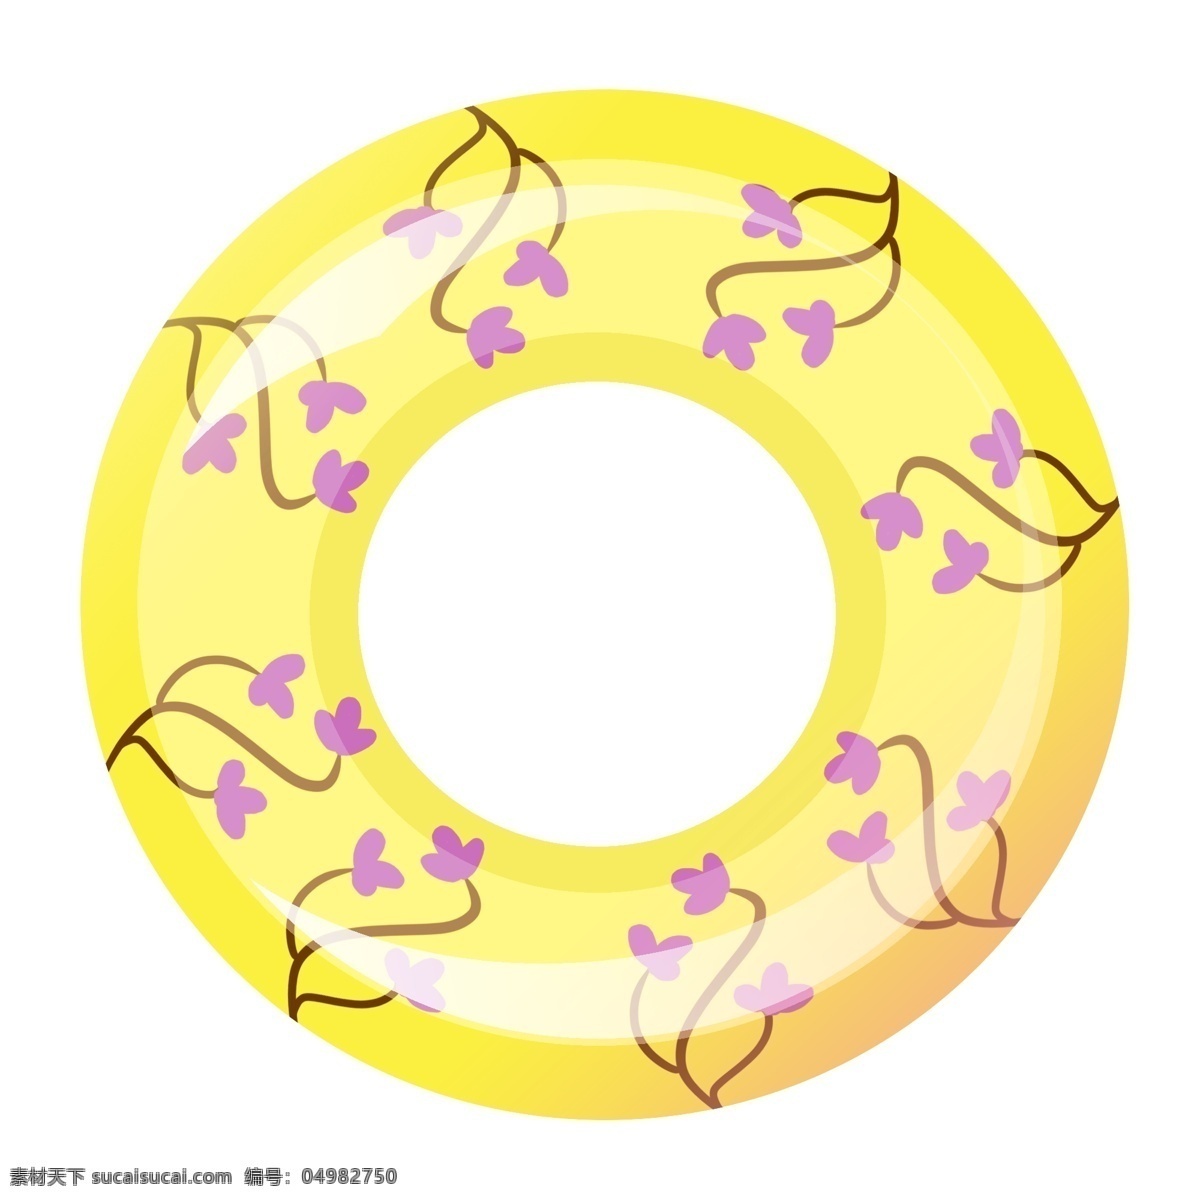 黄色 卡通 游泳 圈 游泳圈 圆形